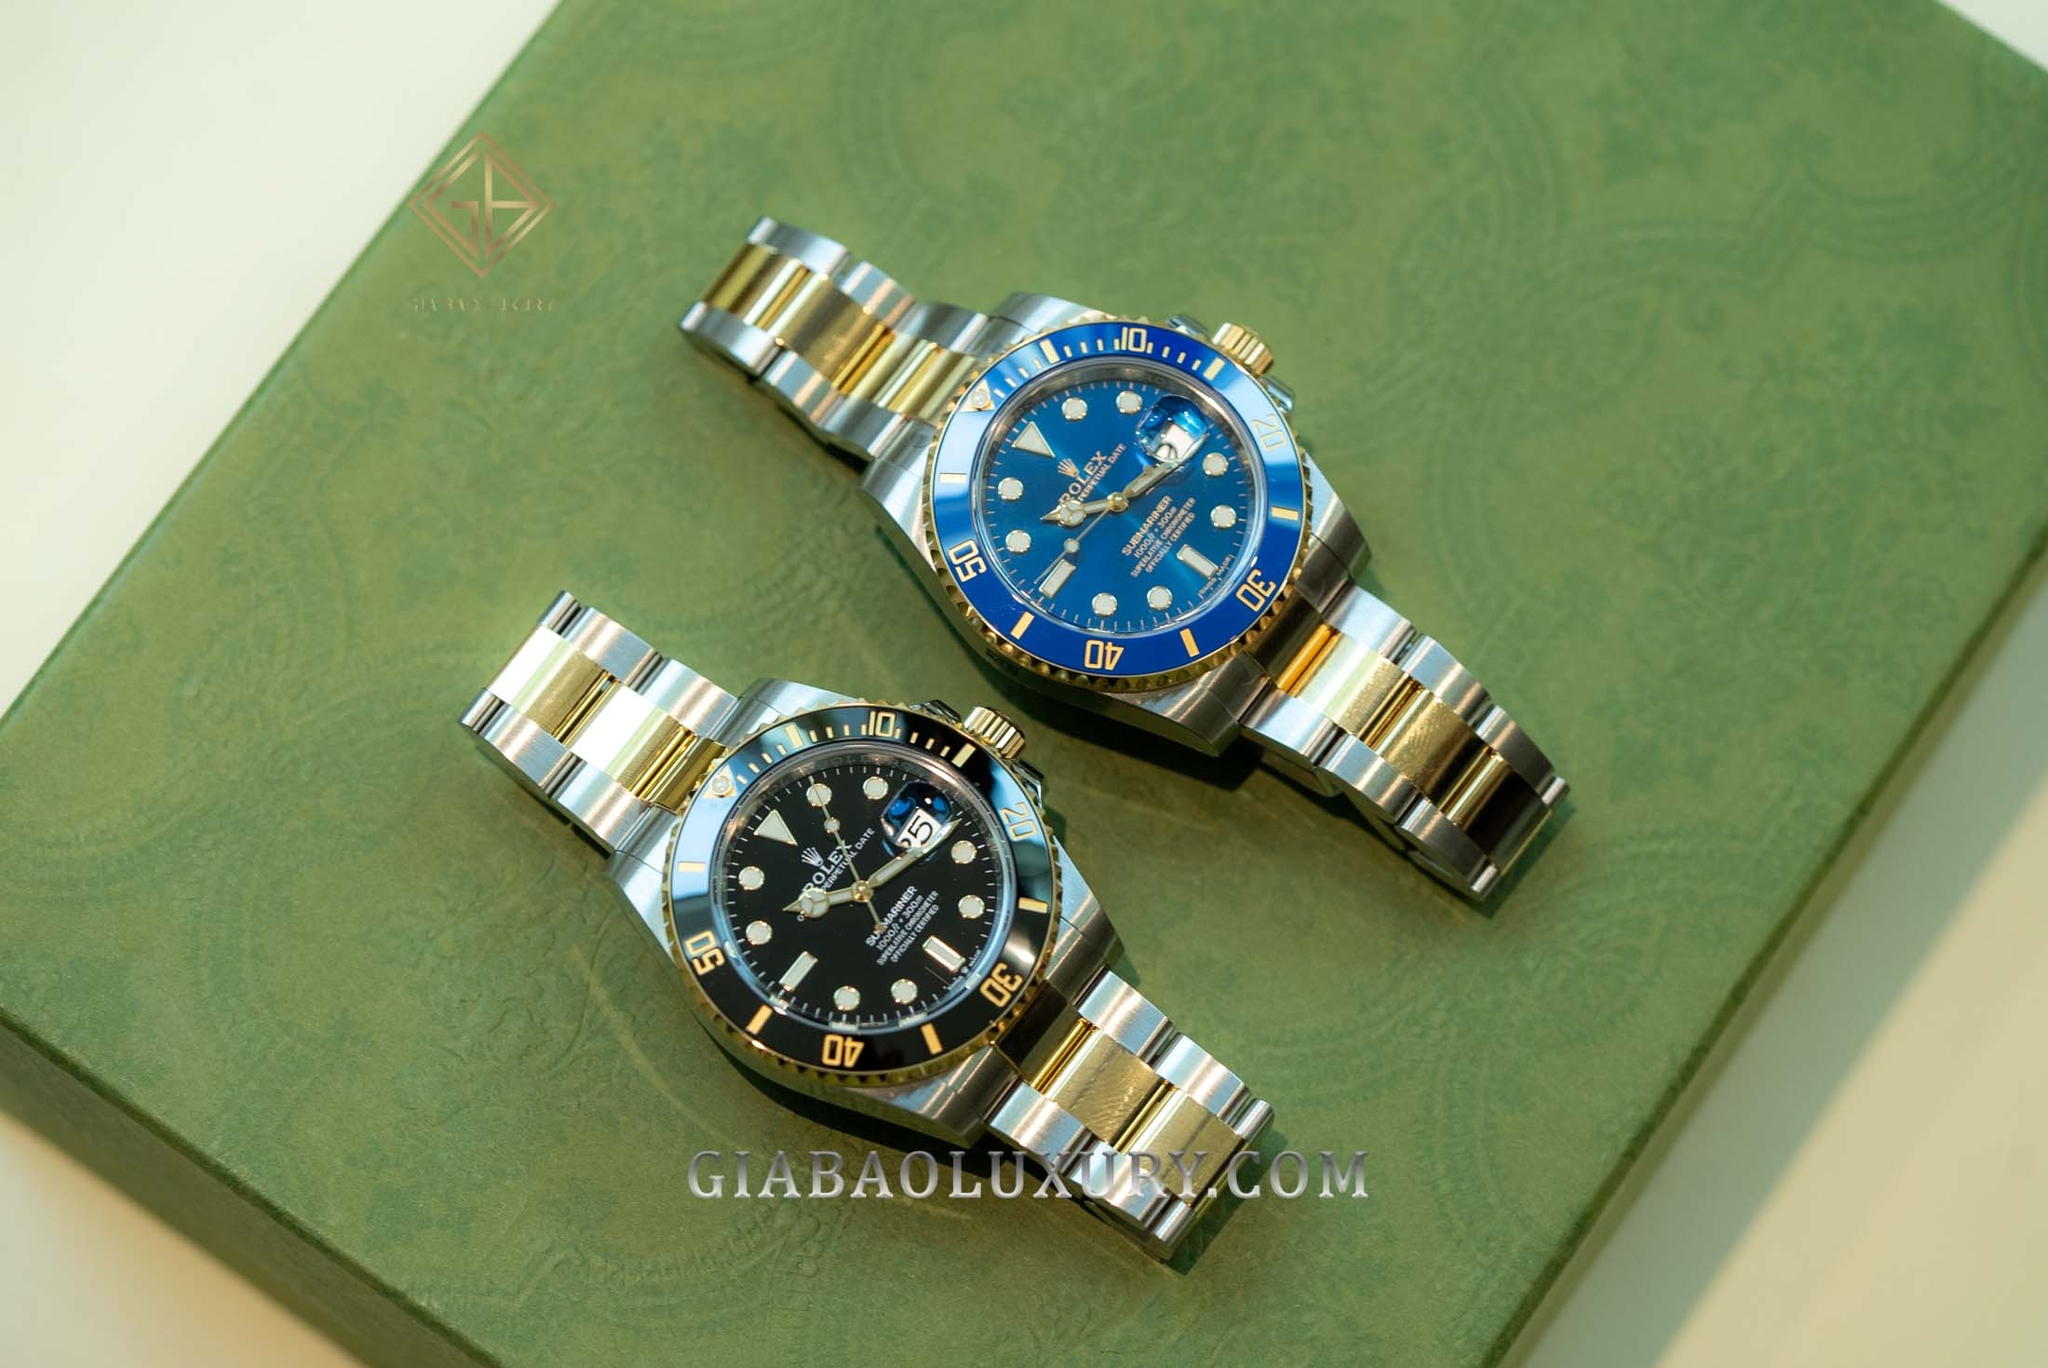 So sánh hai thế hệ đồng hồ Submariner cận kề: ref. 116613 và ref. 126613